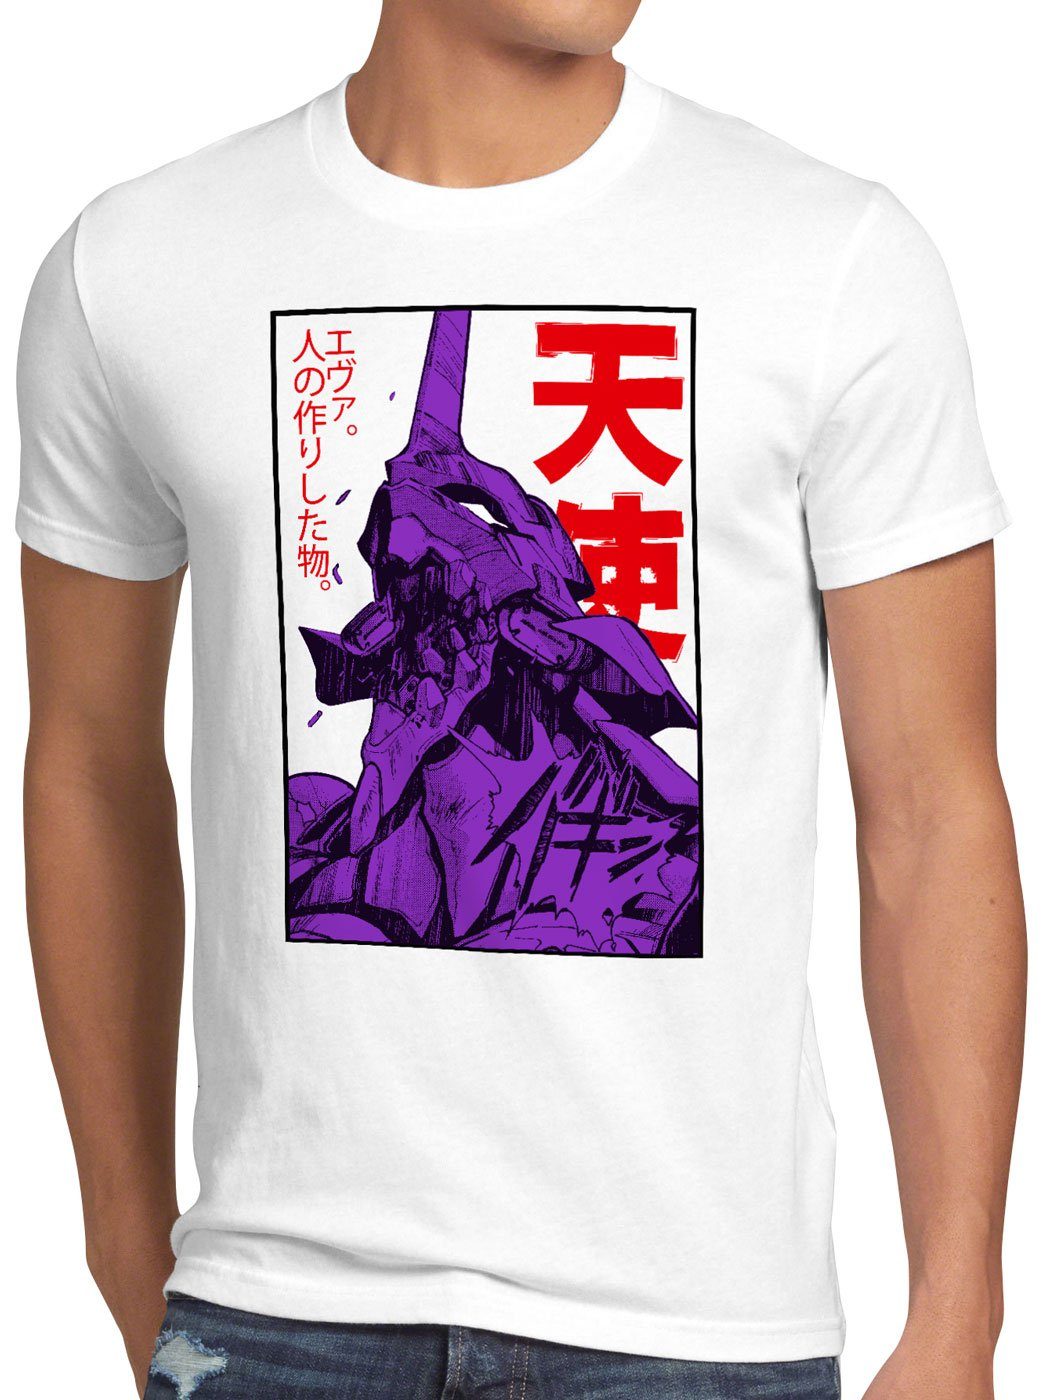 anime 3 Herren T-Shirt Print-Shirt Rage style3 Neo-Tokyo weiß evangelion japanisch